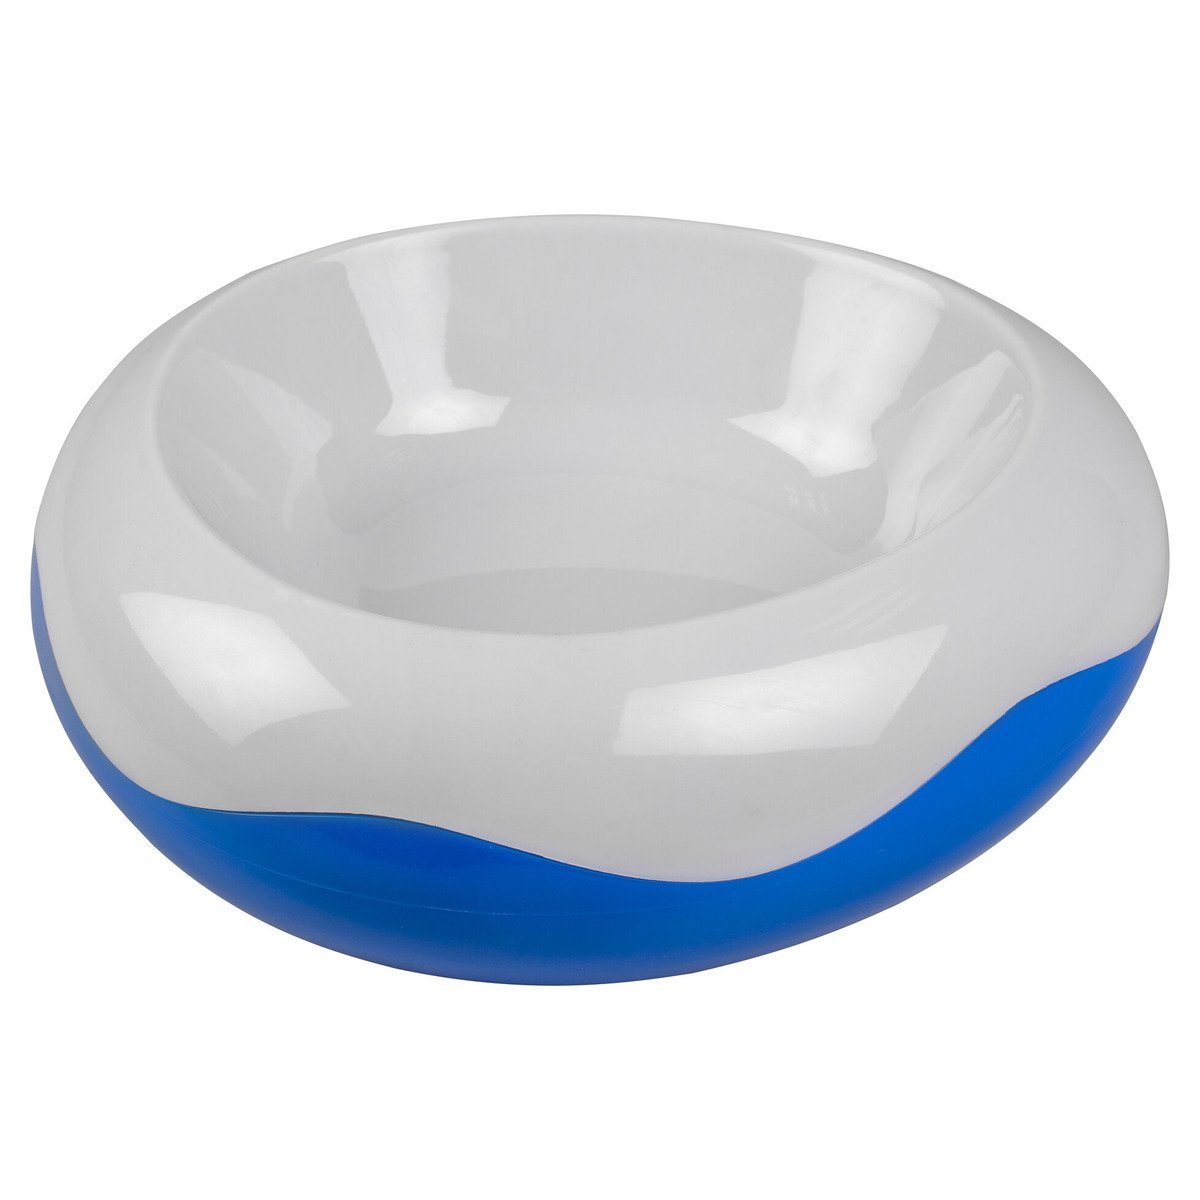 DUVO+ Futterbehälter Kühlnapf weiß/blau für Katzen, Größe: S / Maße: Ø 19,5 cm